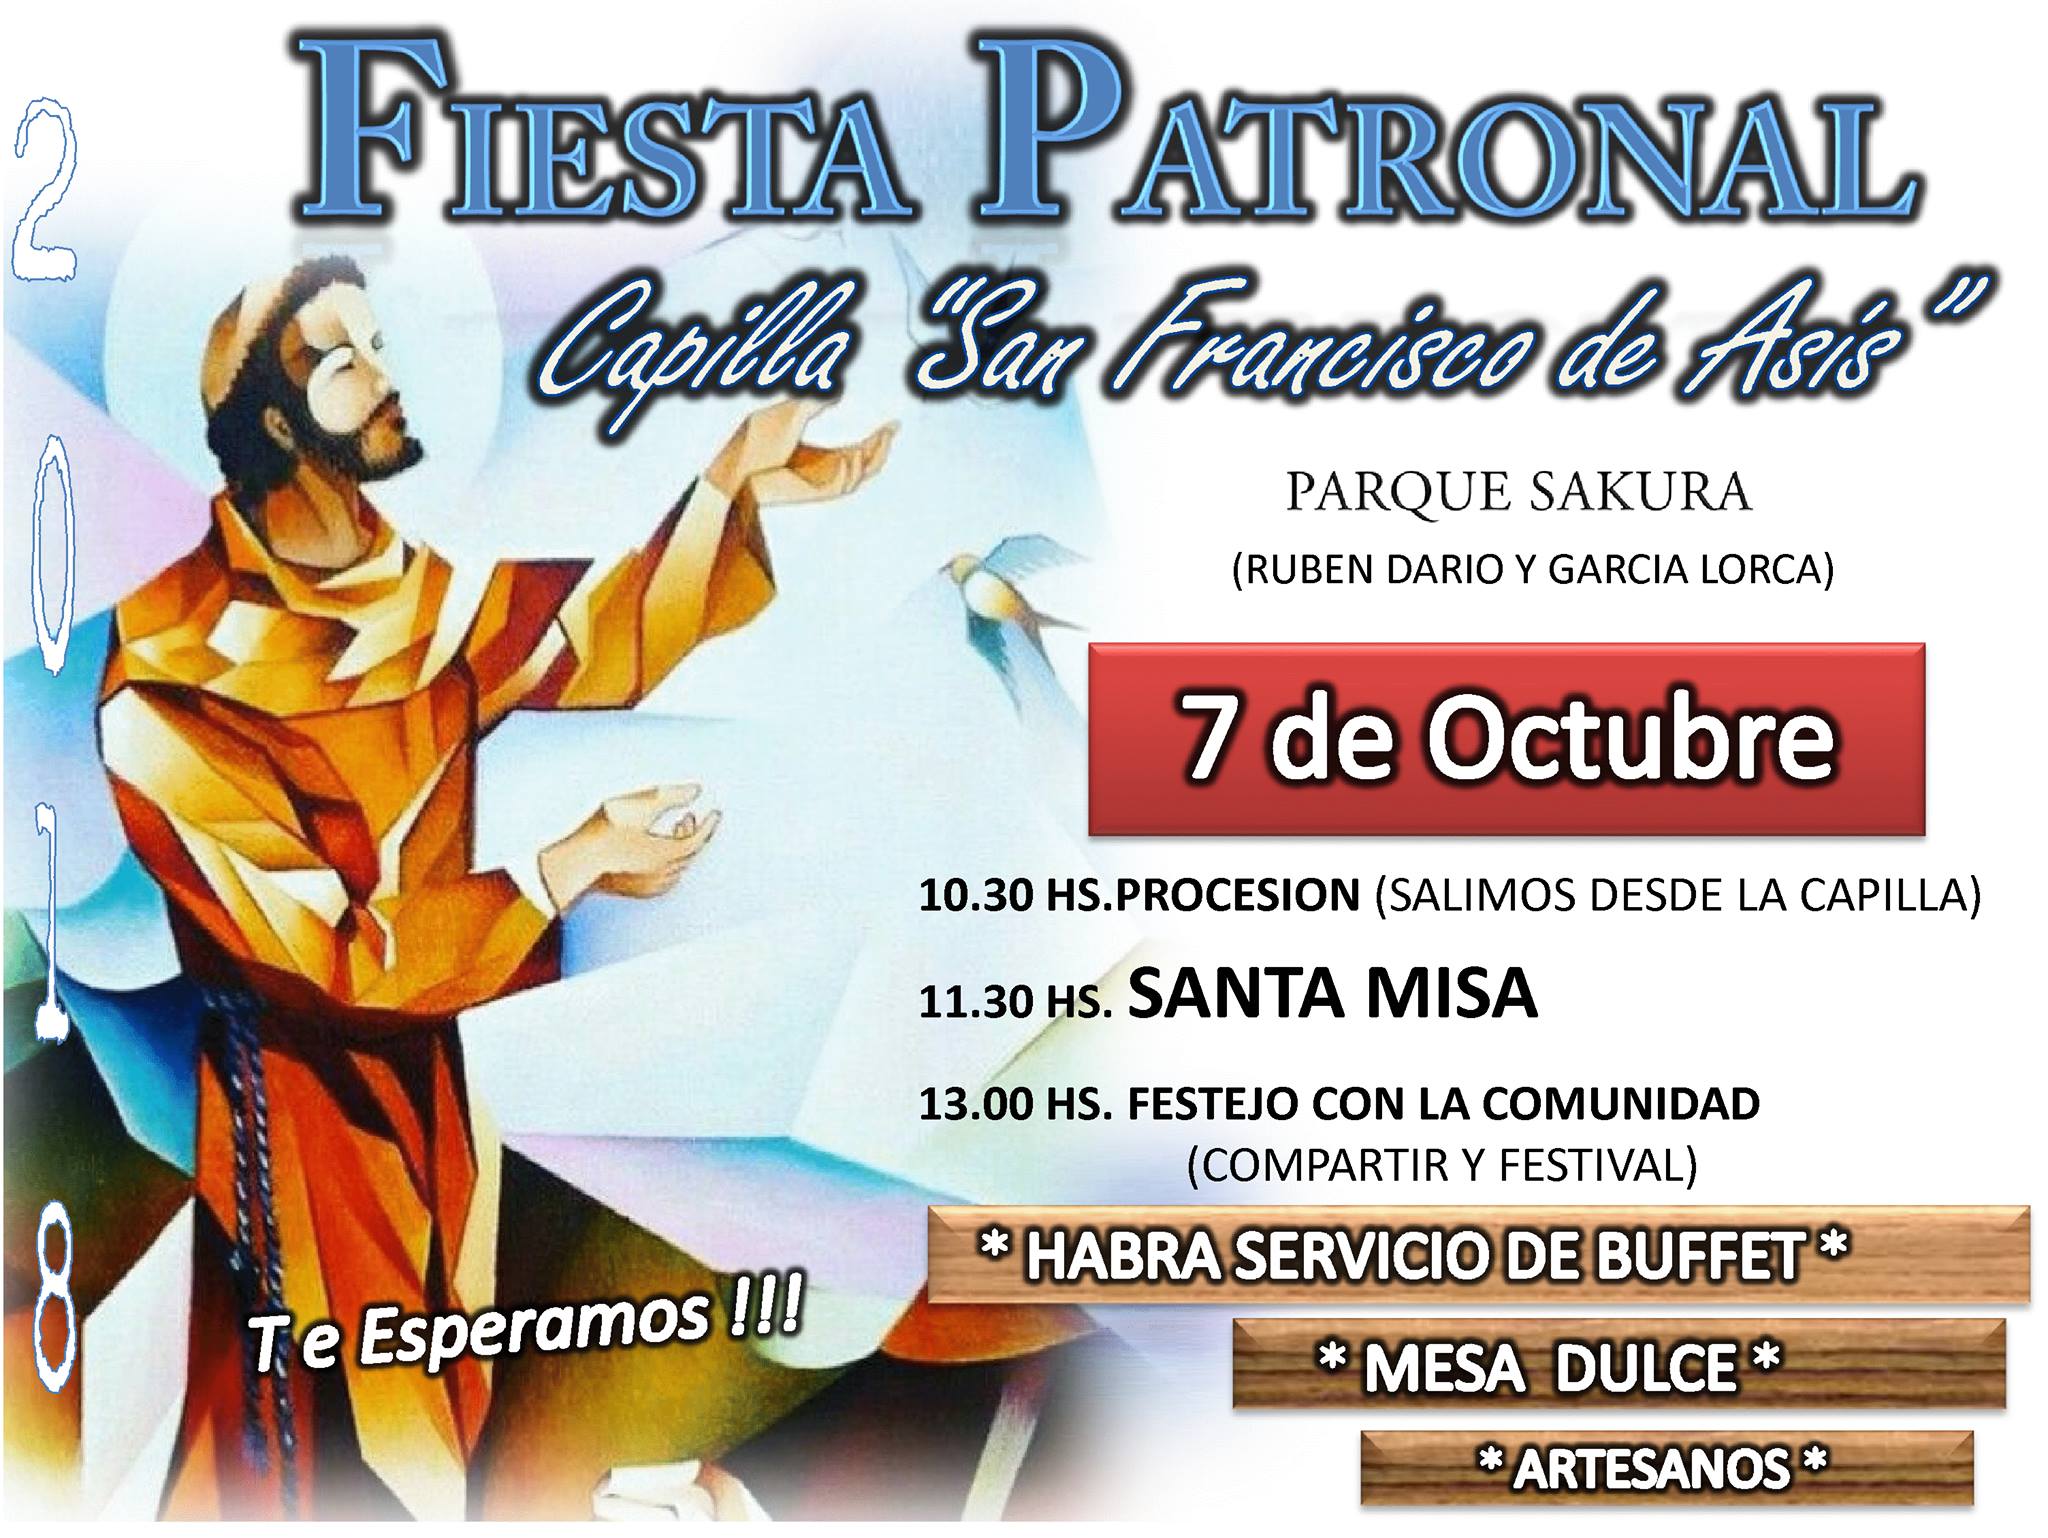 Fiesta Patronal en Capilla San Francisco de Asis – Parque Sakura. Domingo 7 octubre